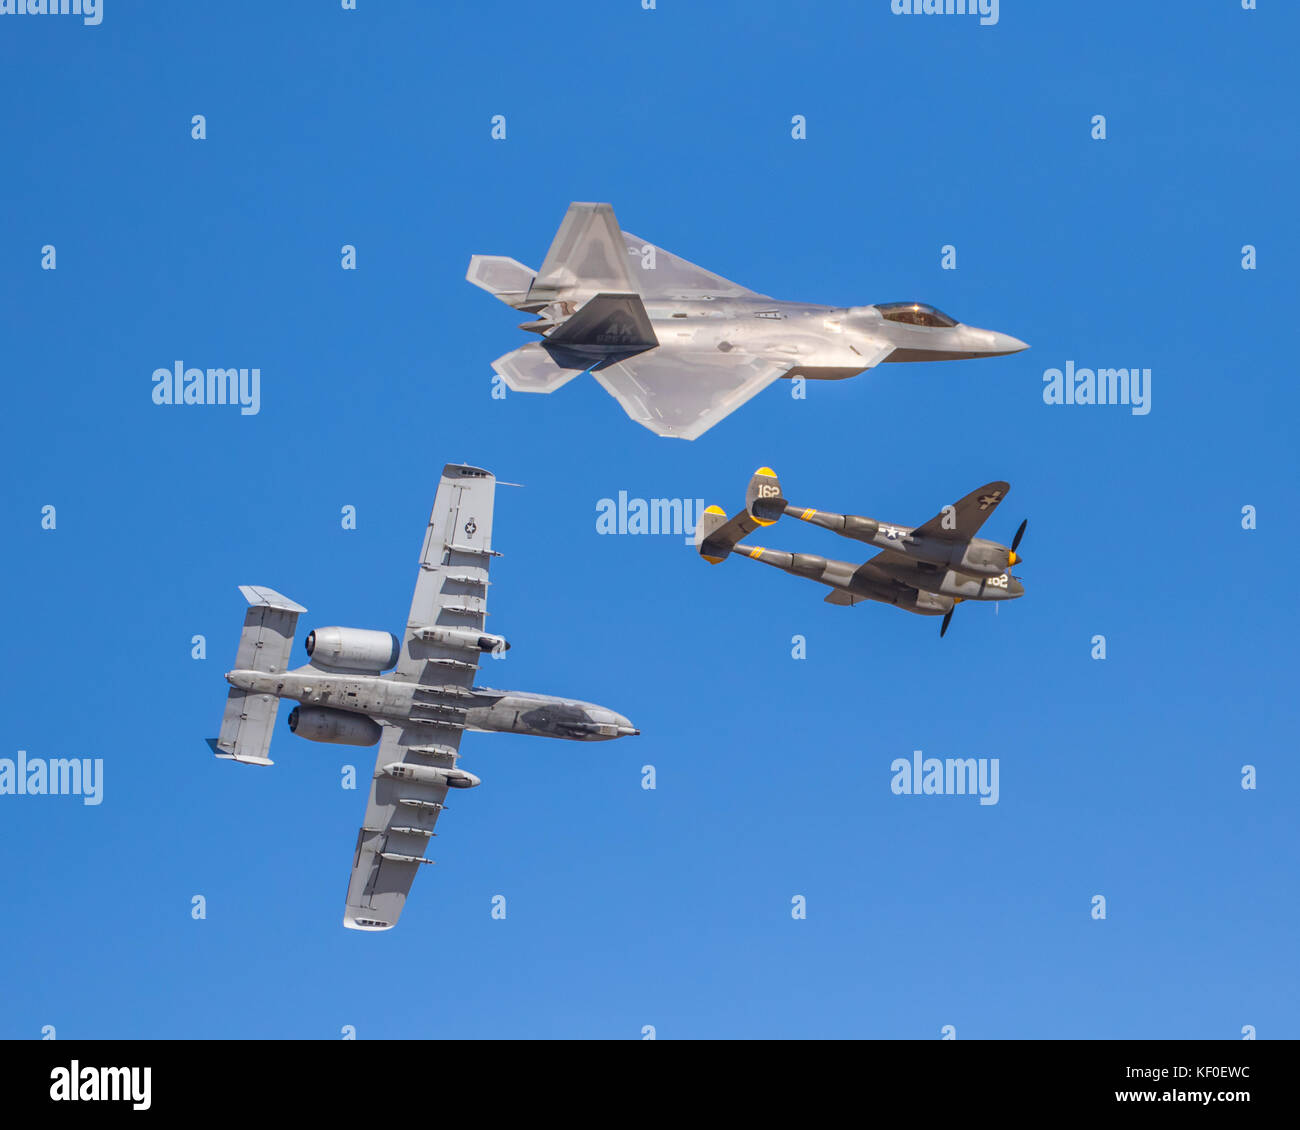 Heritage Flight. Während der Kalifornien 2017 International Airshow, ein Trio von militärischen Flugzeugen aus drei verschiedenen Epochen flogen zusammen in der Ausbildung. Stockfoto